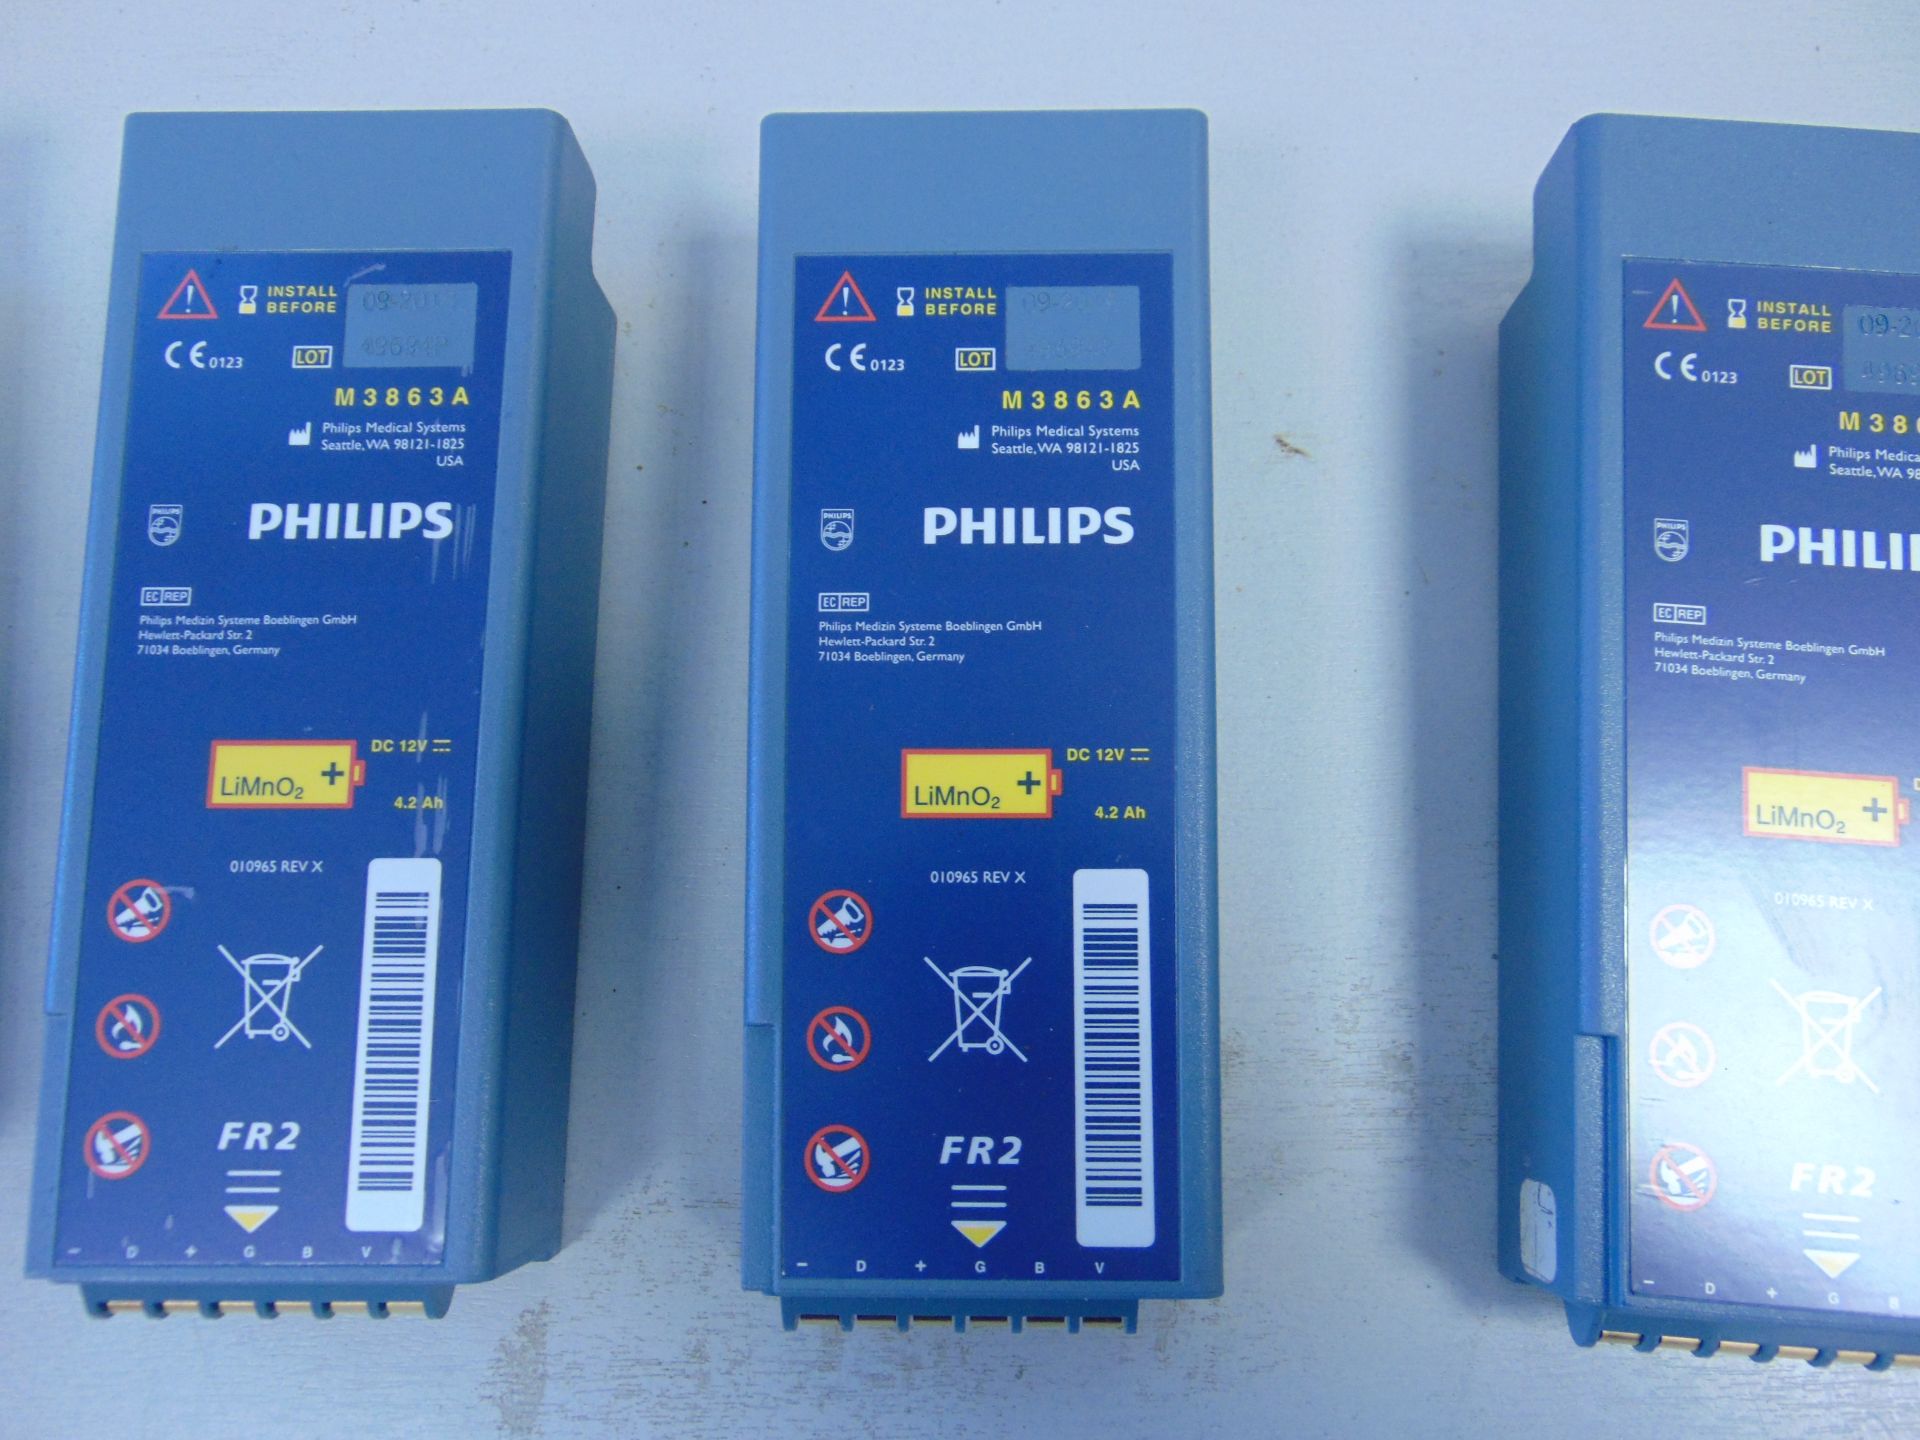 6 x Philips Heartstart FR2 Defibrillator Batteries. - Image 3 of 3